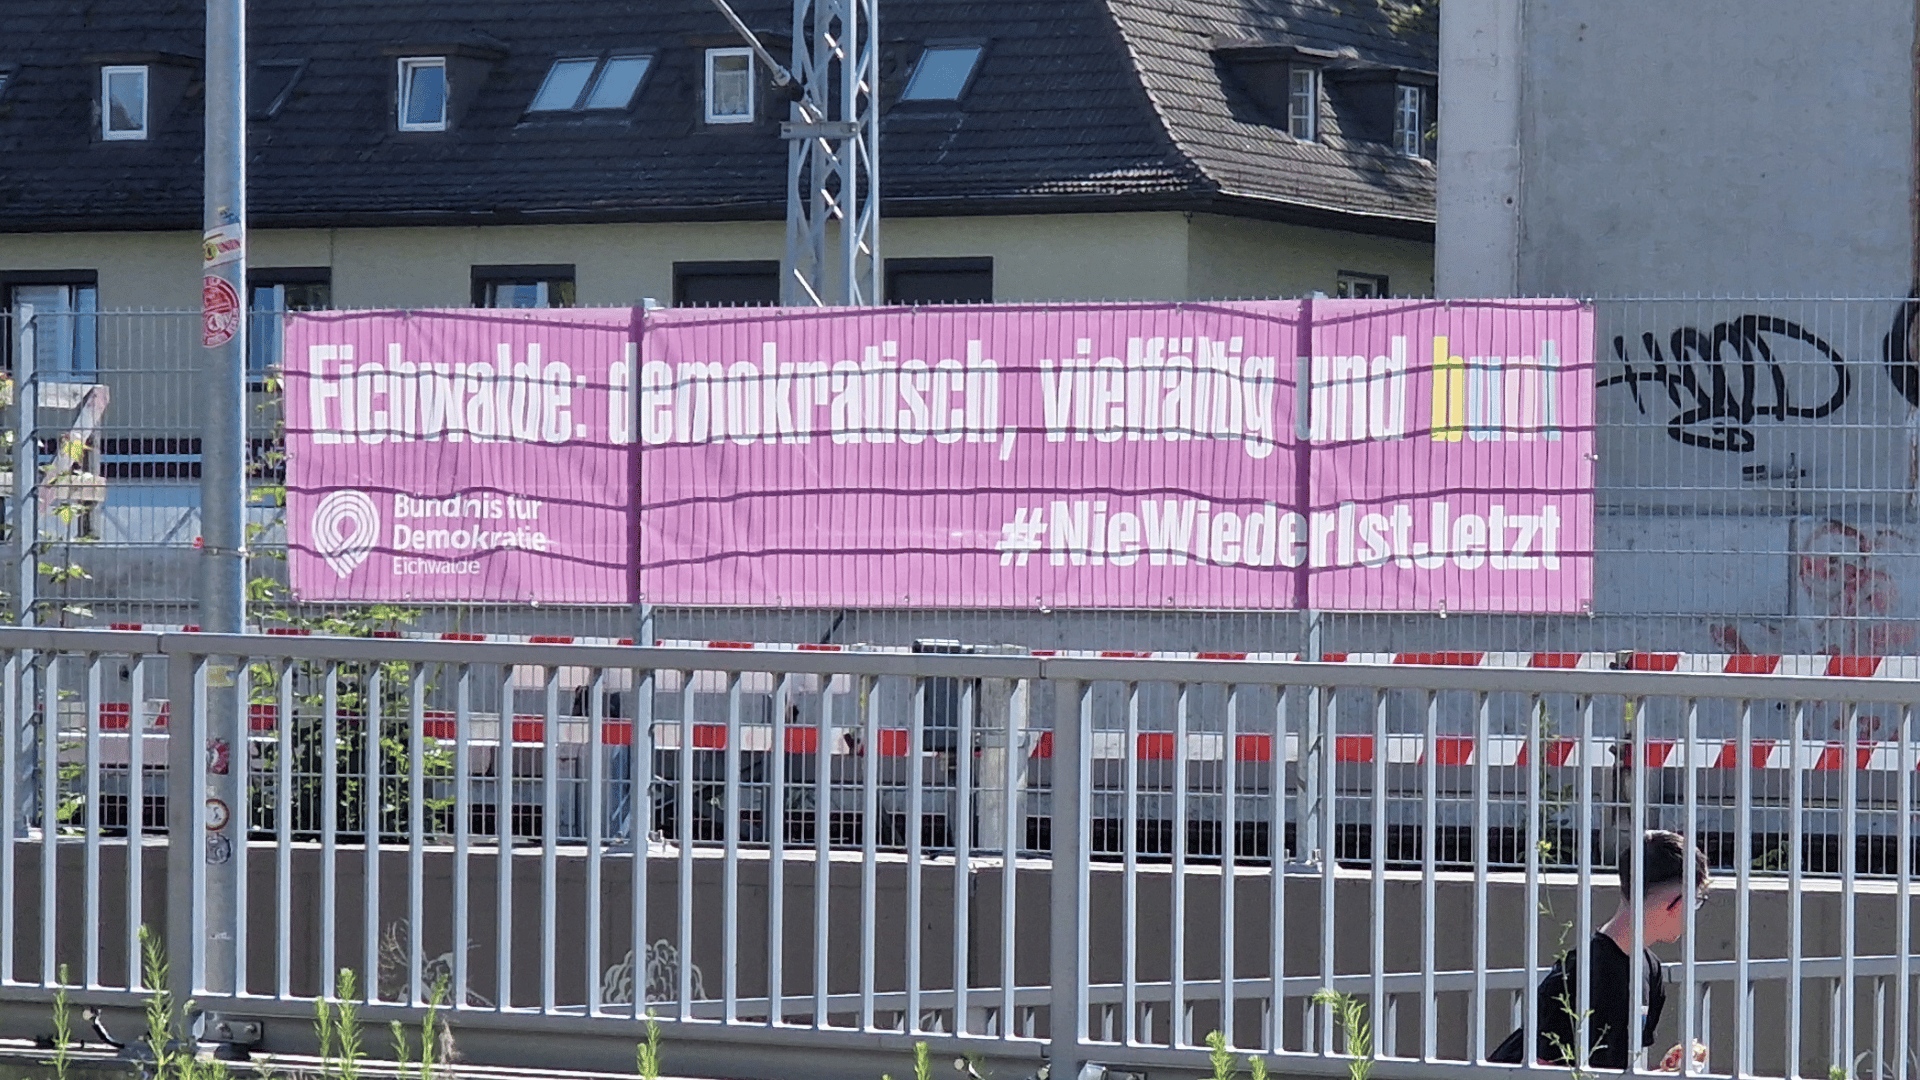 Foto eines Banners, auf dem steht "Eichwalde: demokratisch, vielfältig und bunt" sowie "NieWiederIstJetzt"